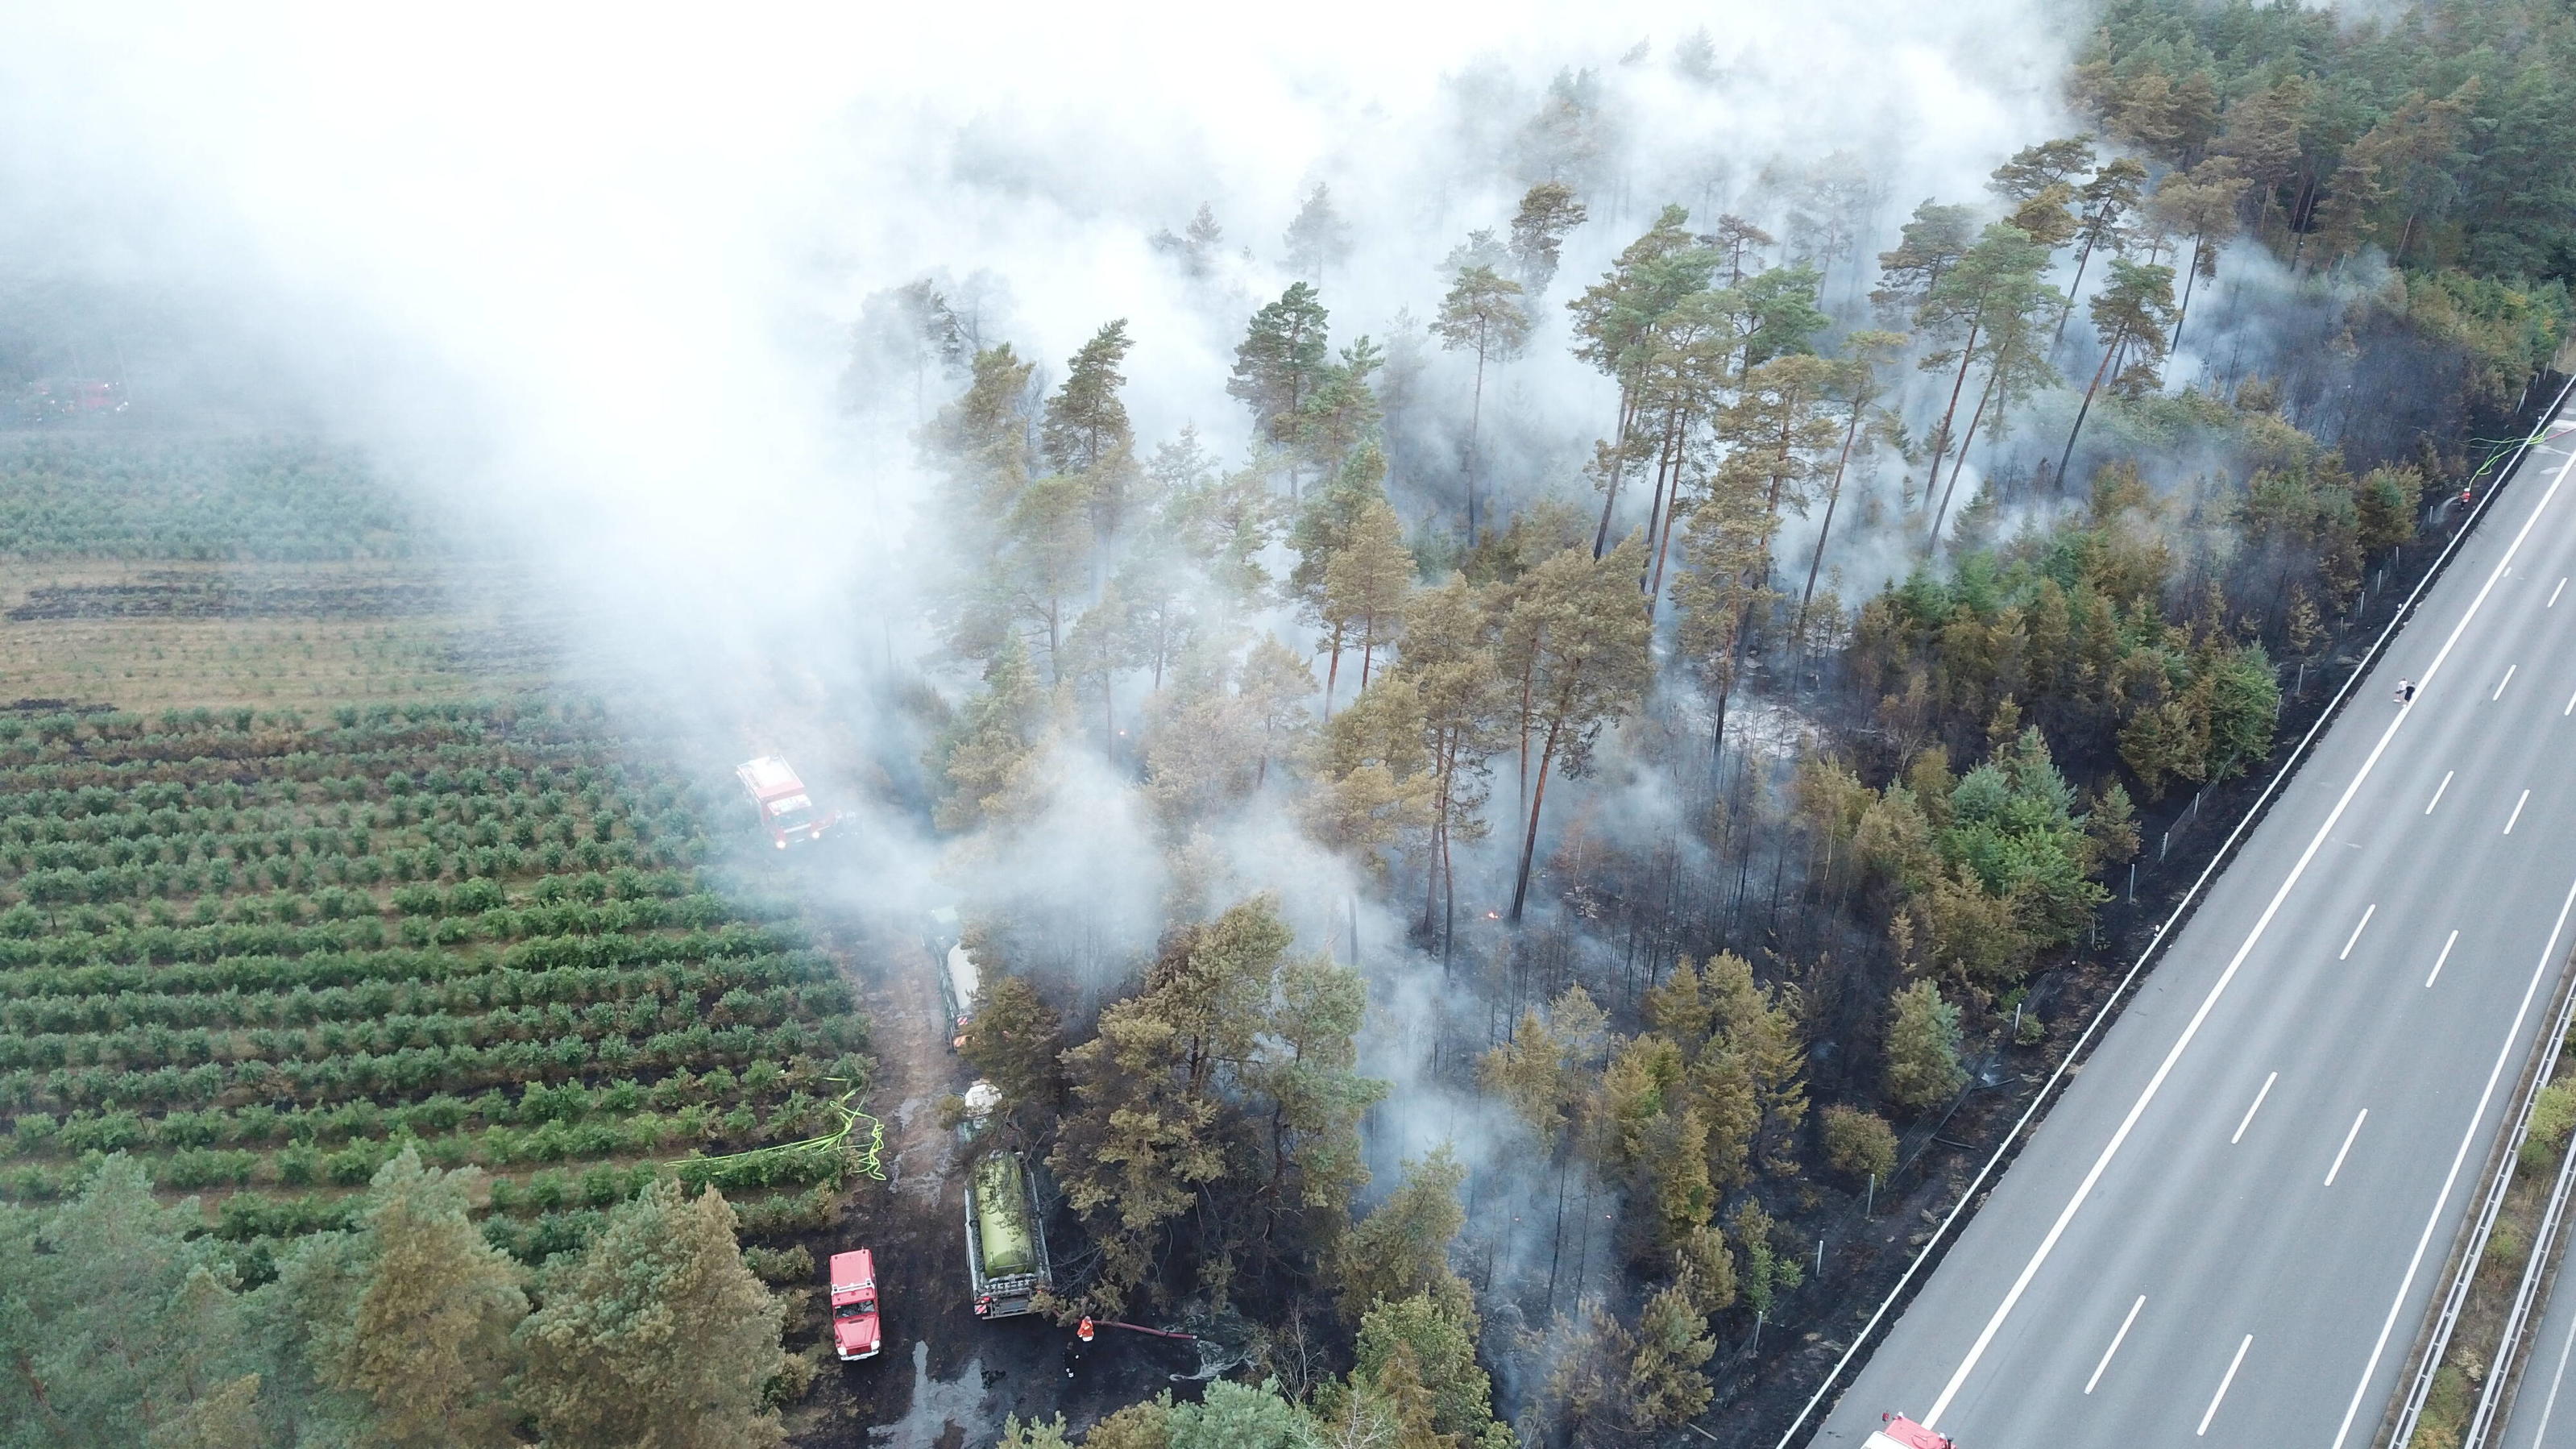  28 Hektar Wald brennen in Niedersachsen - LUFTBILDER Die anhaltende Hitzewelle hat in Niedersachsen für den ersten Waldbrand gesorgt. Ausgegangen war das Ganze gegen 18 Uhr vermutlich von einem brennenden LKW Reifen auf der BAB 7 bei Allertal. Durch